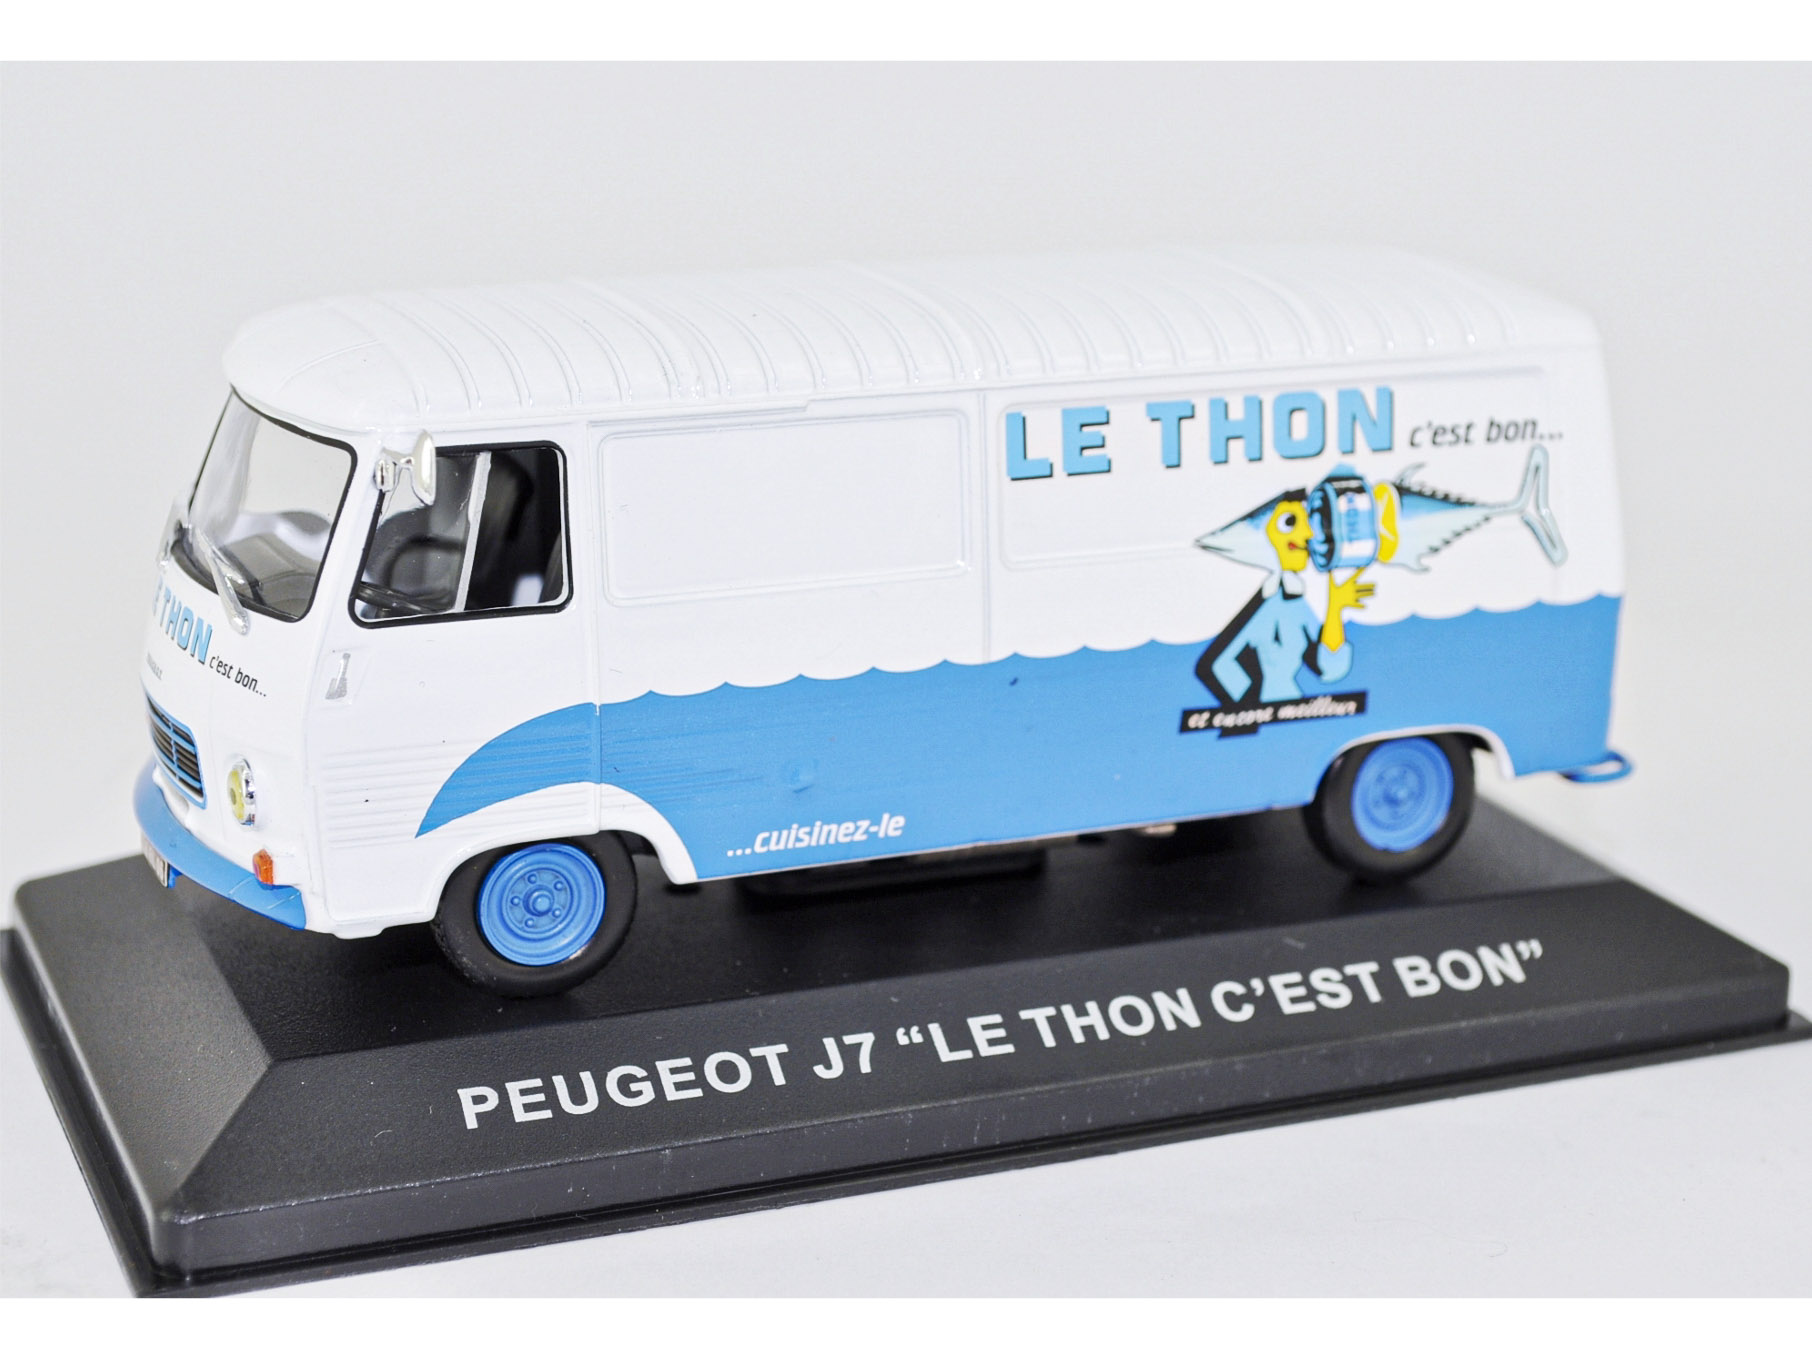 Peugeot J7 "LE THON C'EST BON"